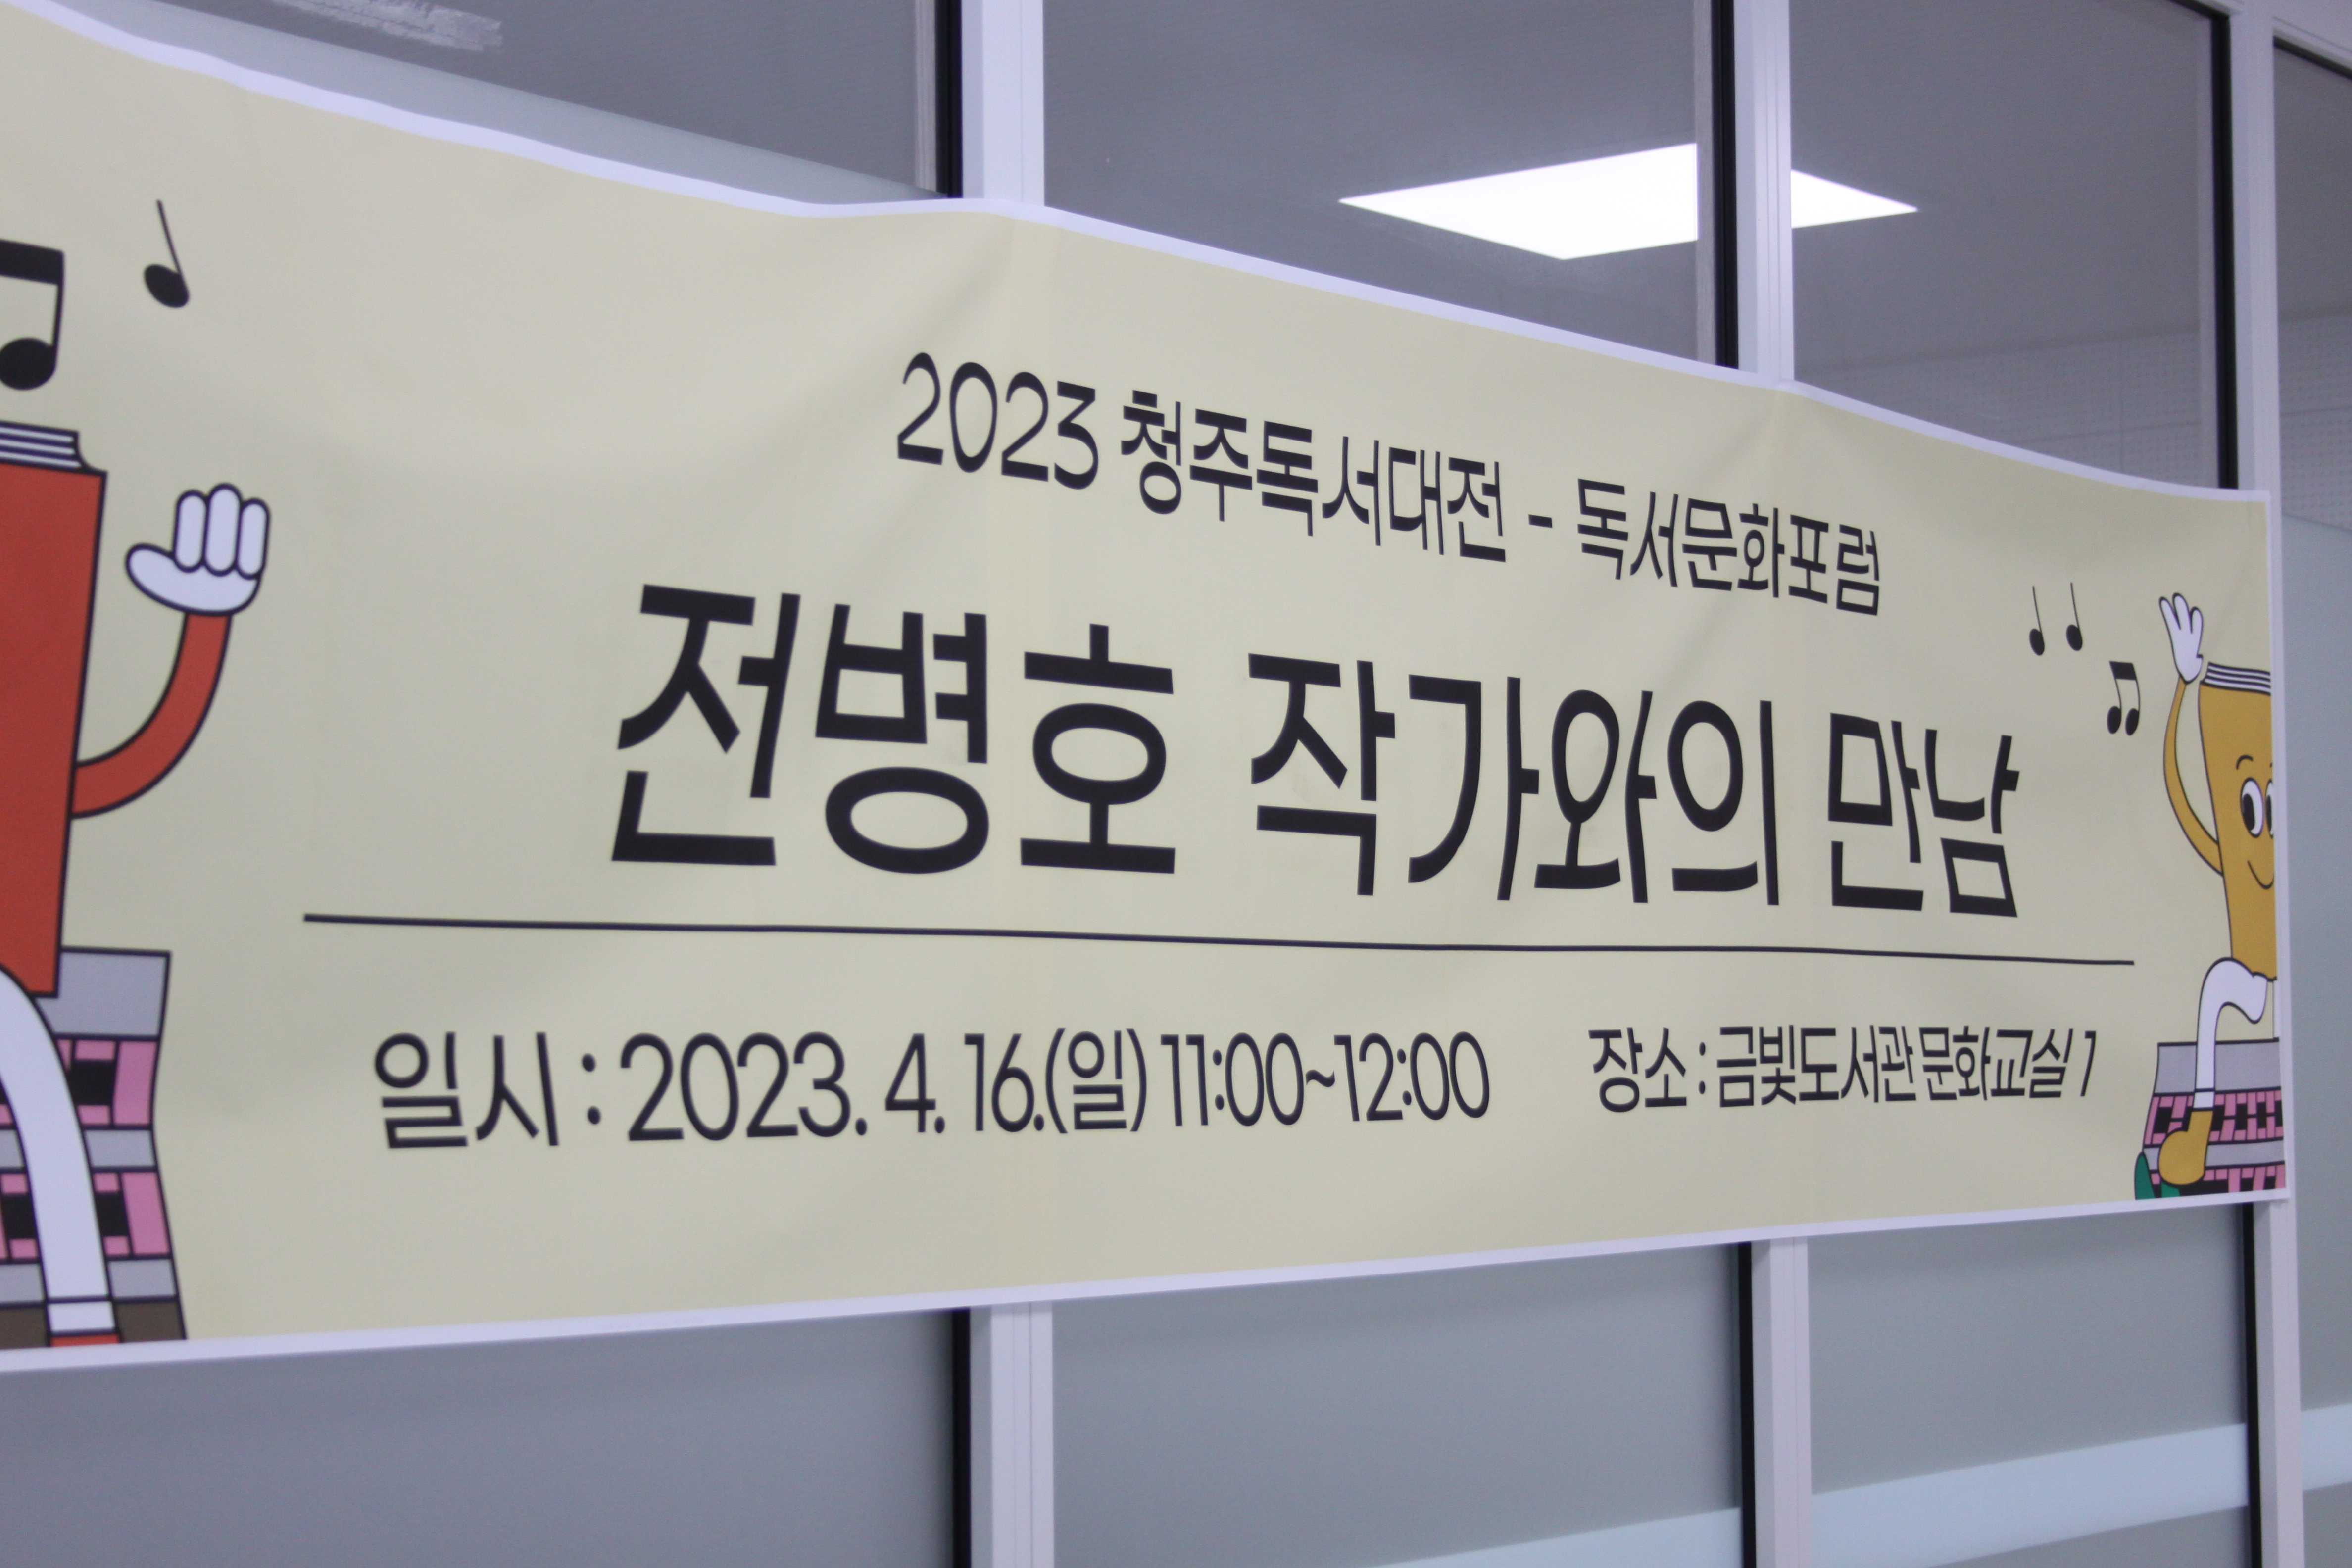 2023 청주독서대전 독서문화포럼 - 전병호 작가 